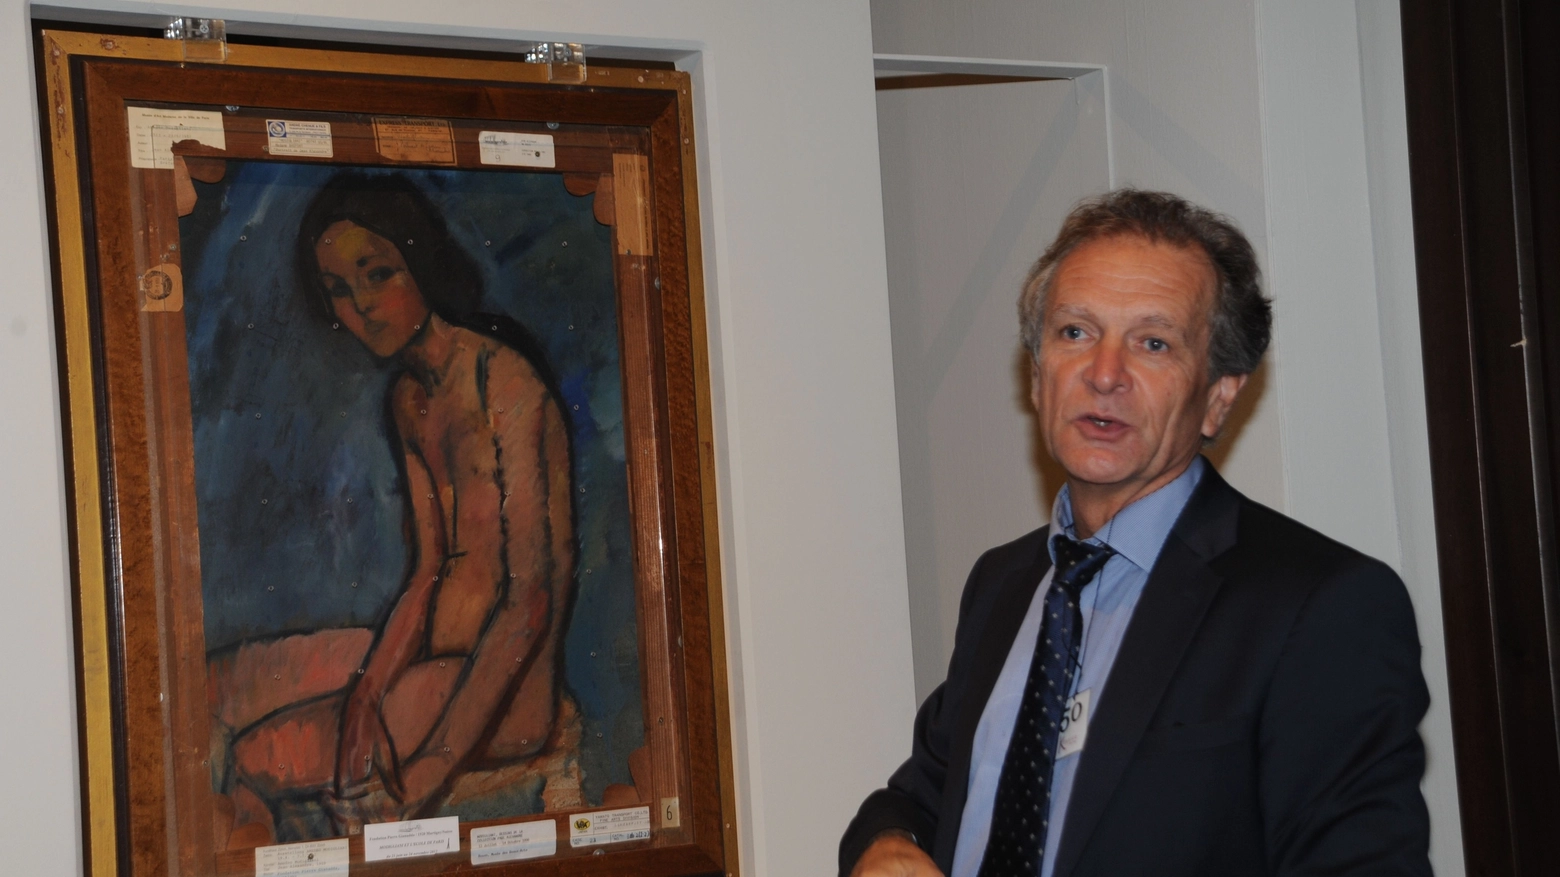 Jean Michel Bouhours, curatore del Centro Pompidou e ideatore della mostra pisana 'Amedeo Modigliani